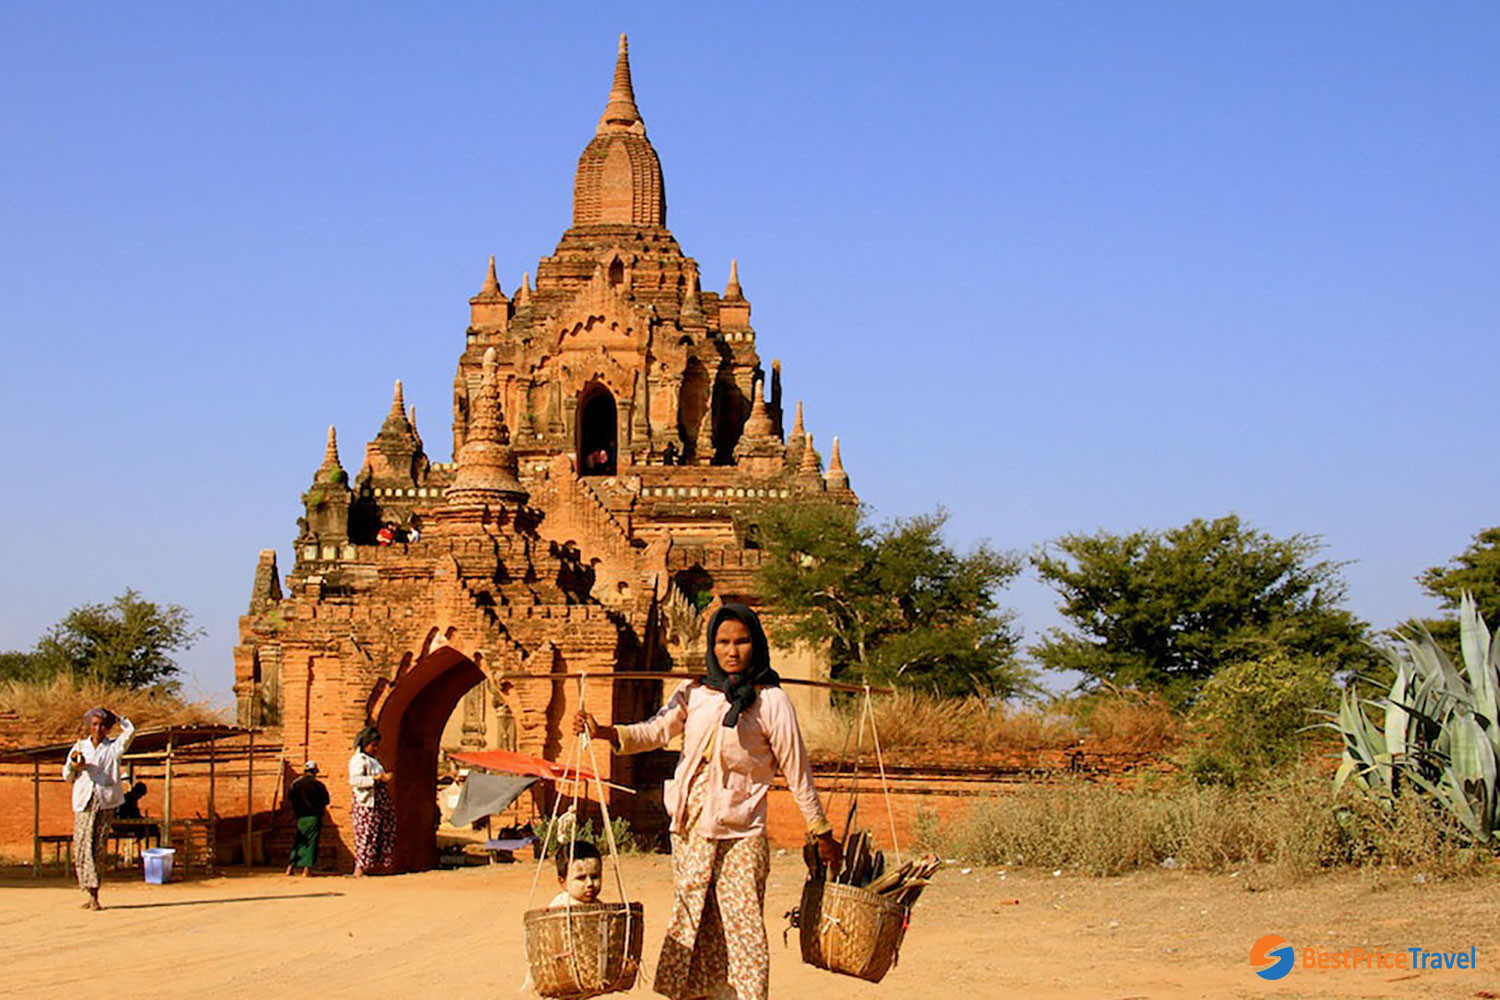 5 Days in Myanmar - Gubyaukgyi Temple